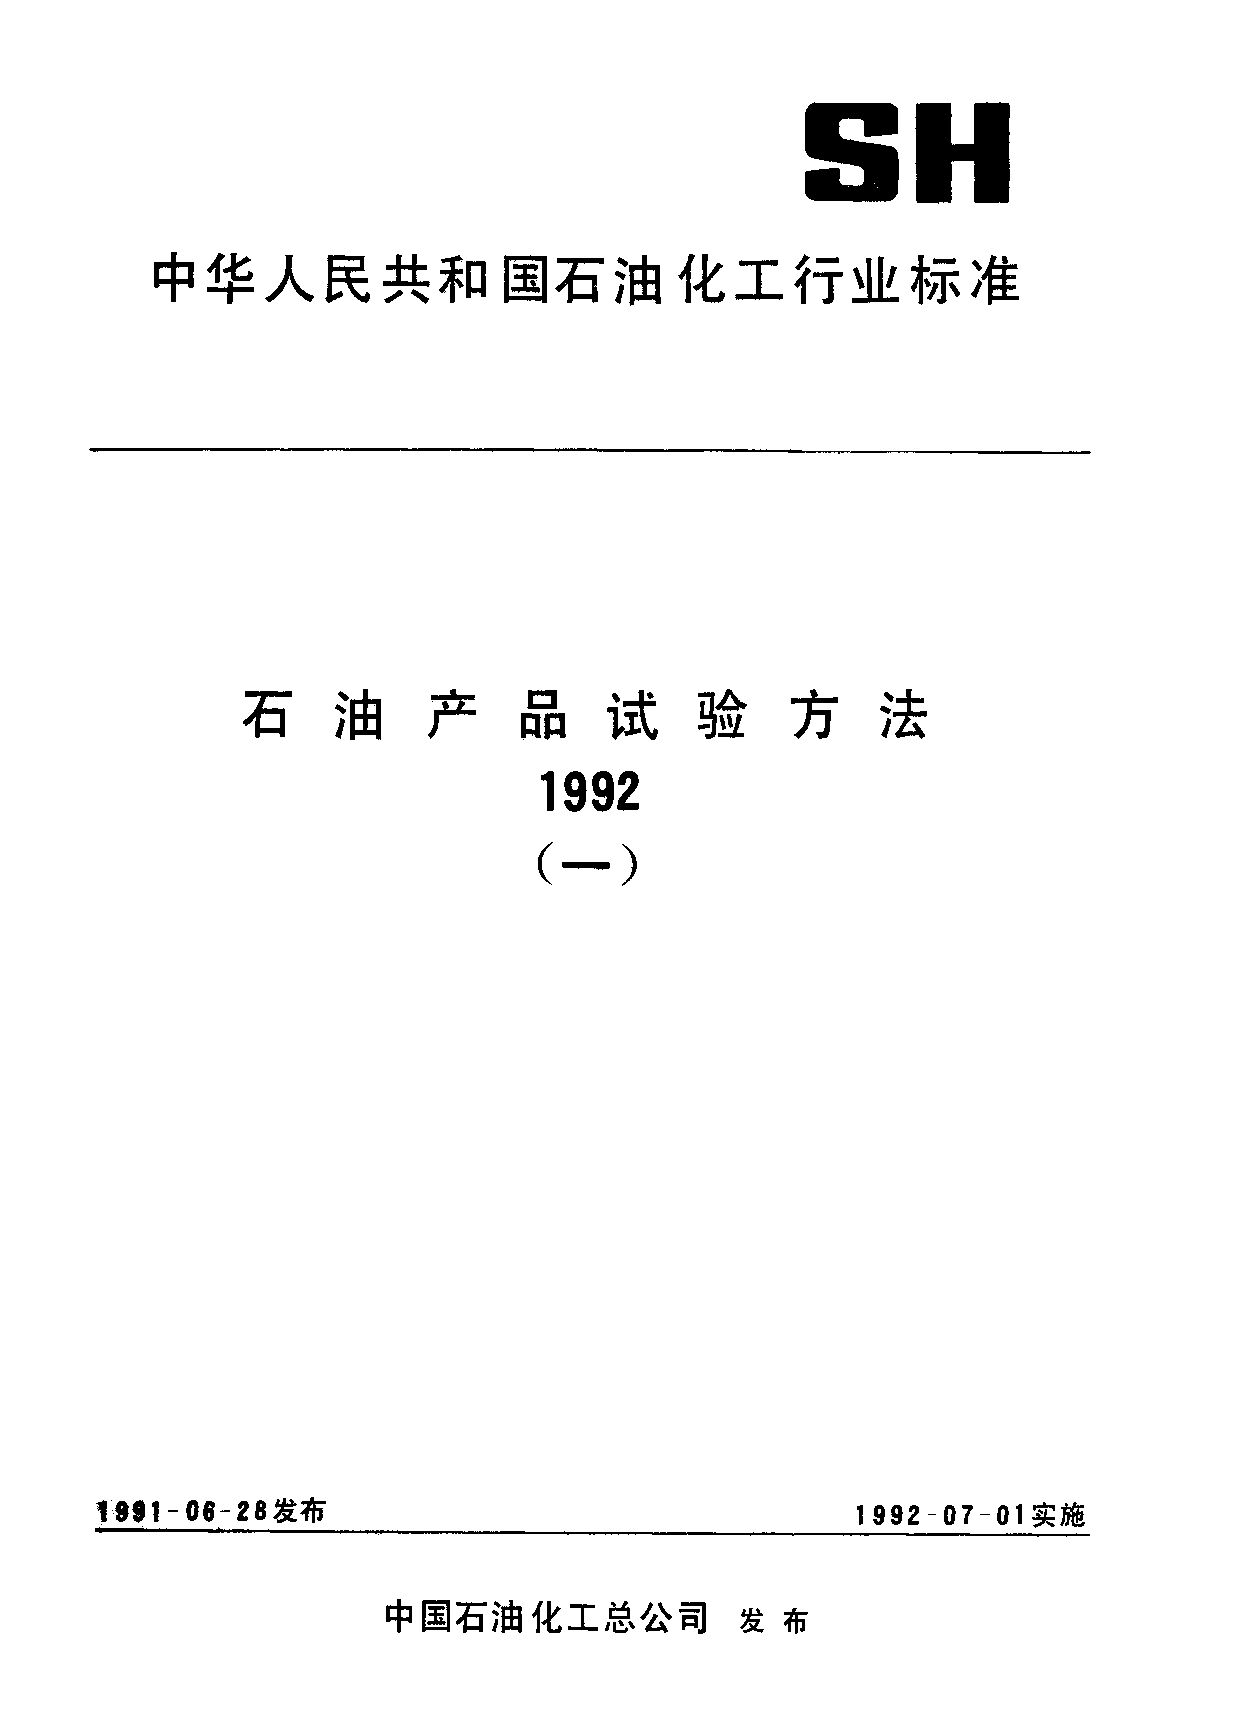 SH/T 1050-1991封面图